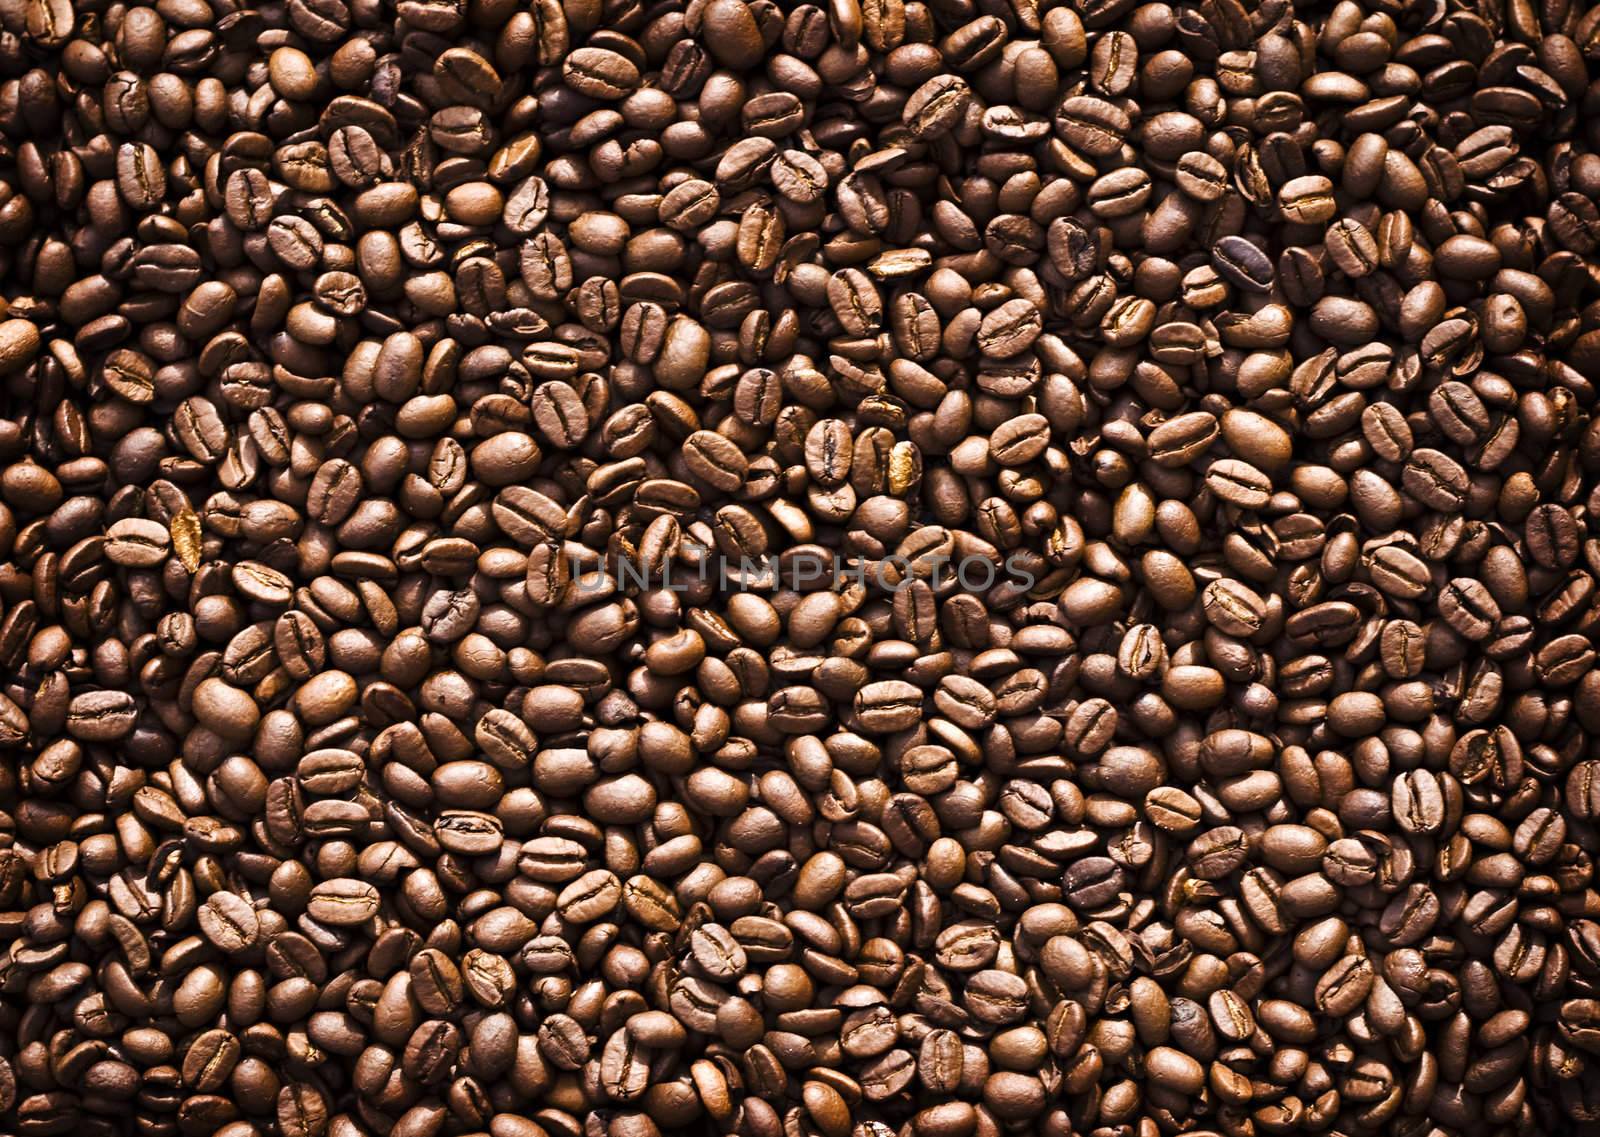 Full frame of coffee beans.
